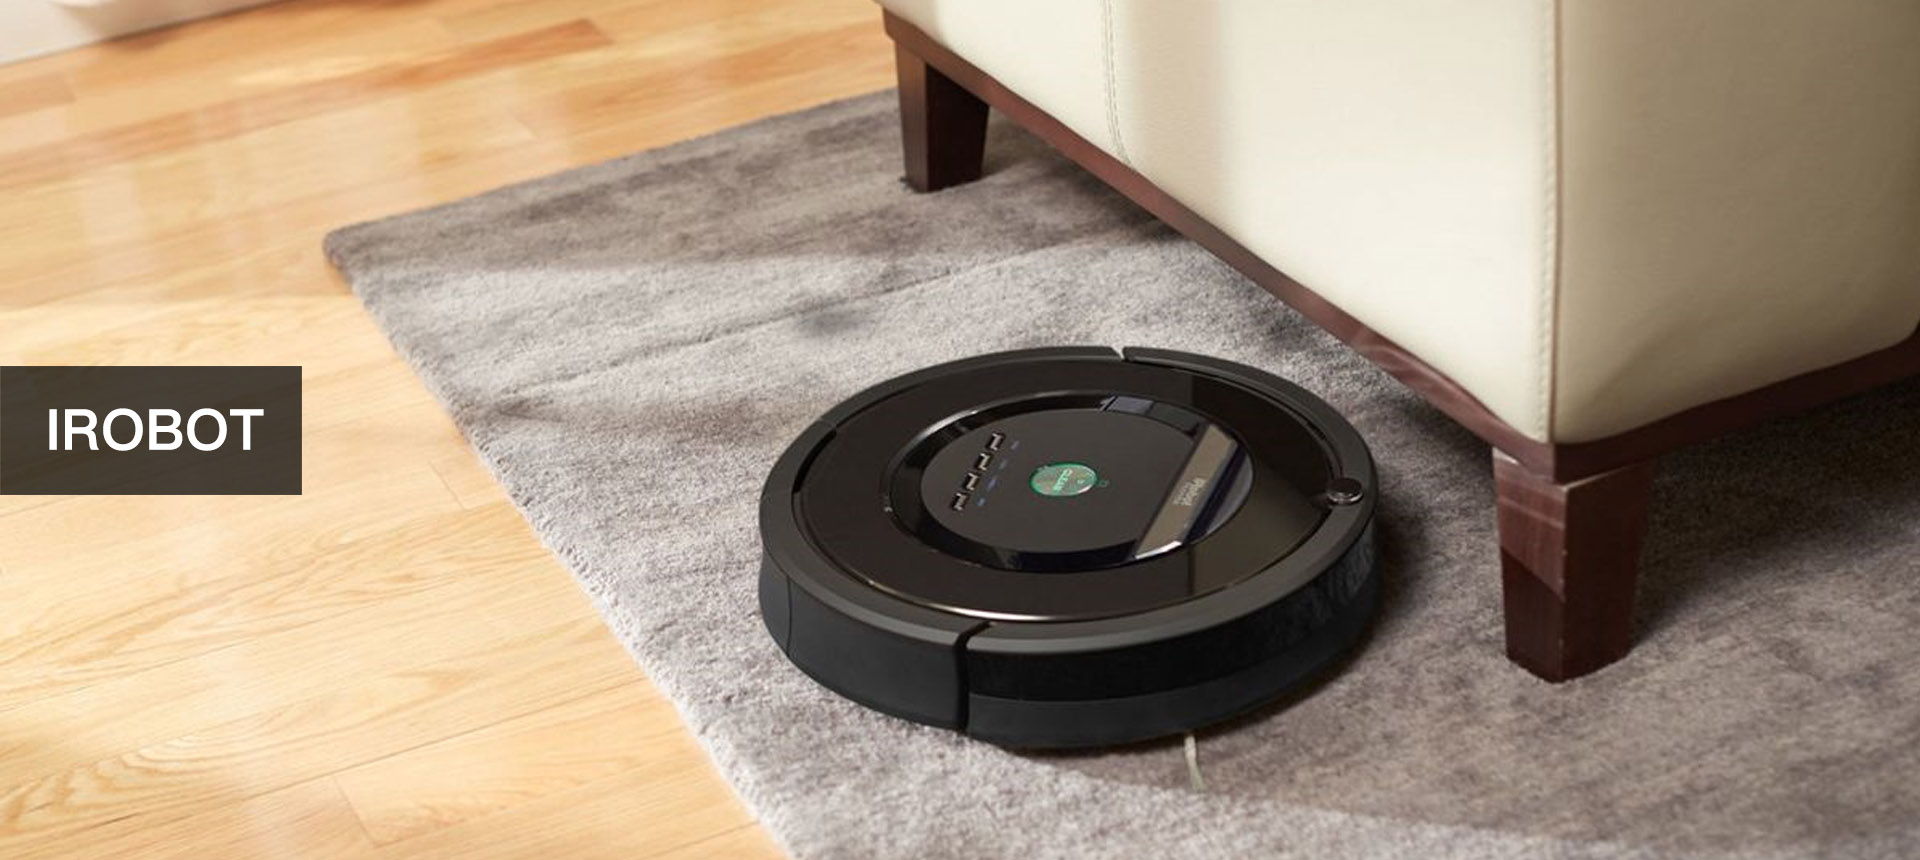 Irobot Robot Vacuum Reviews 2021 Which, Best Irobot For Laminate Floors